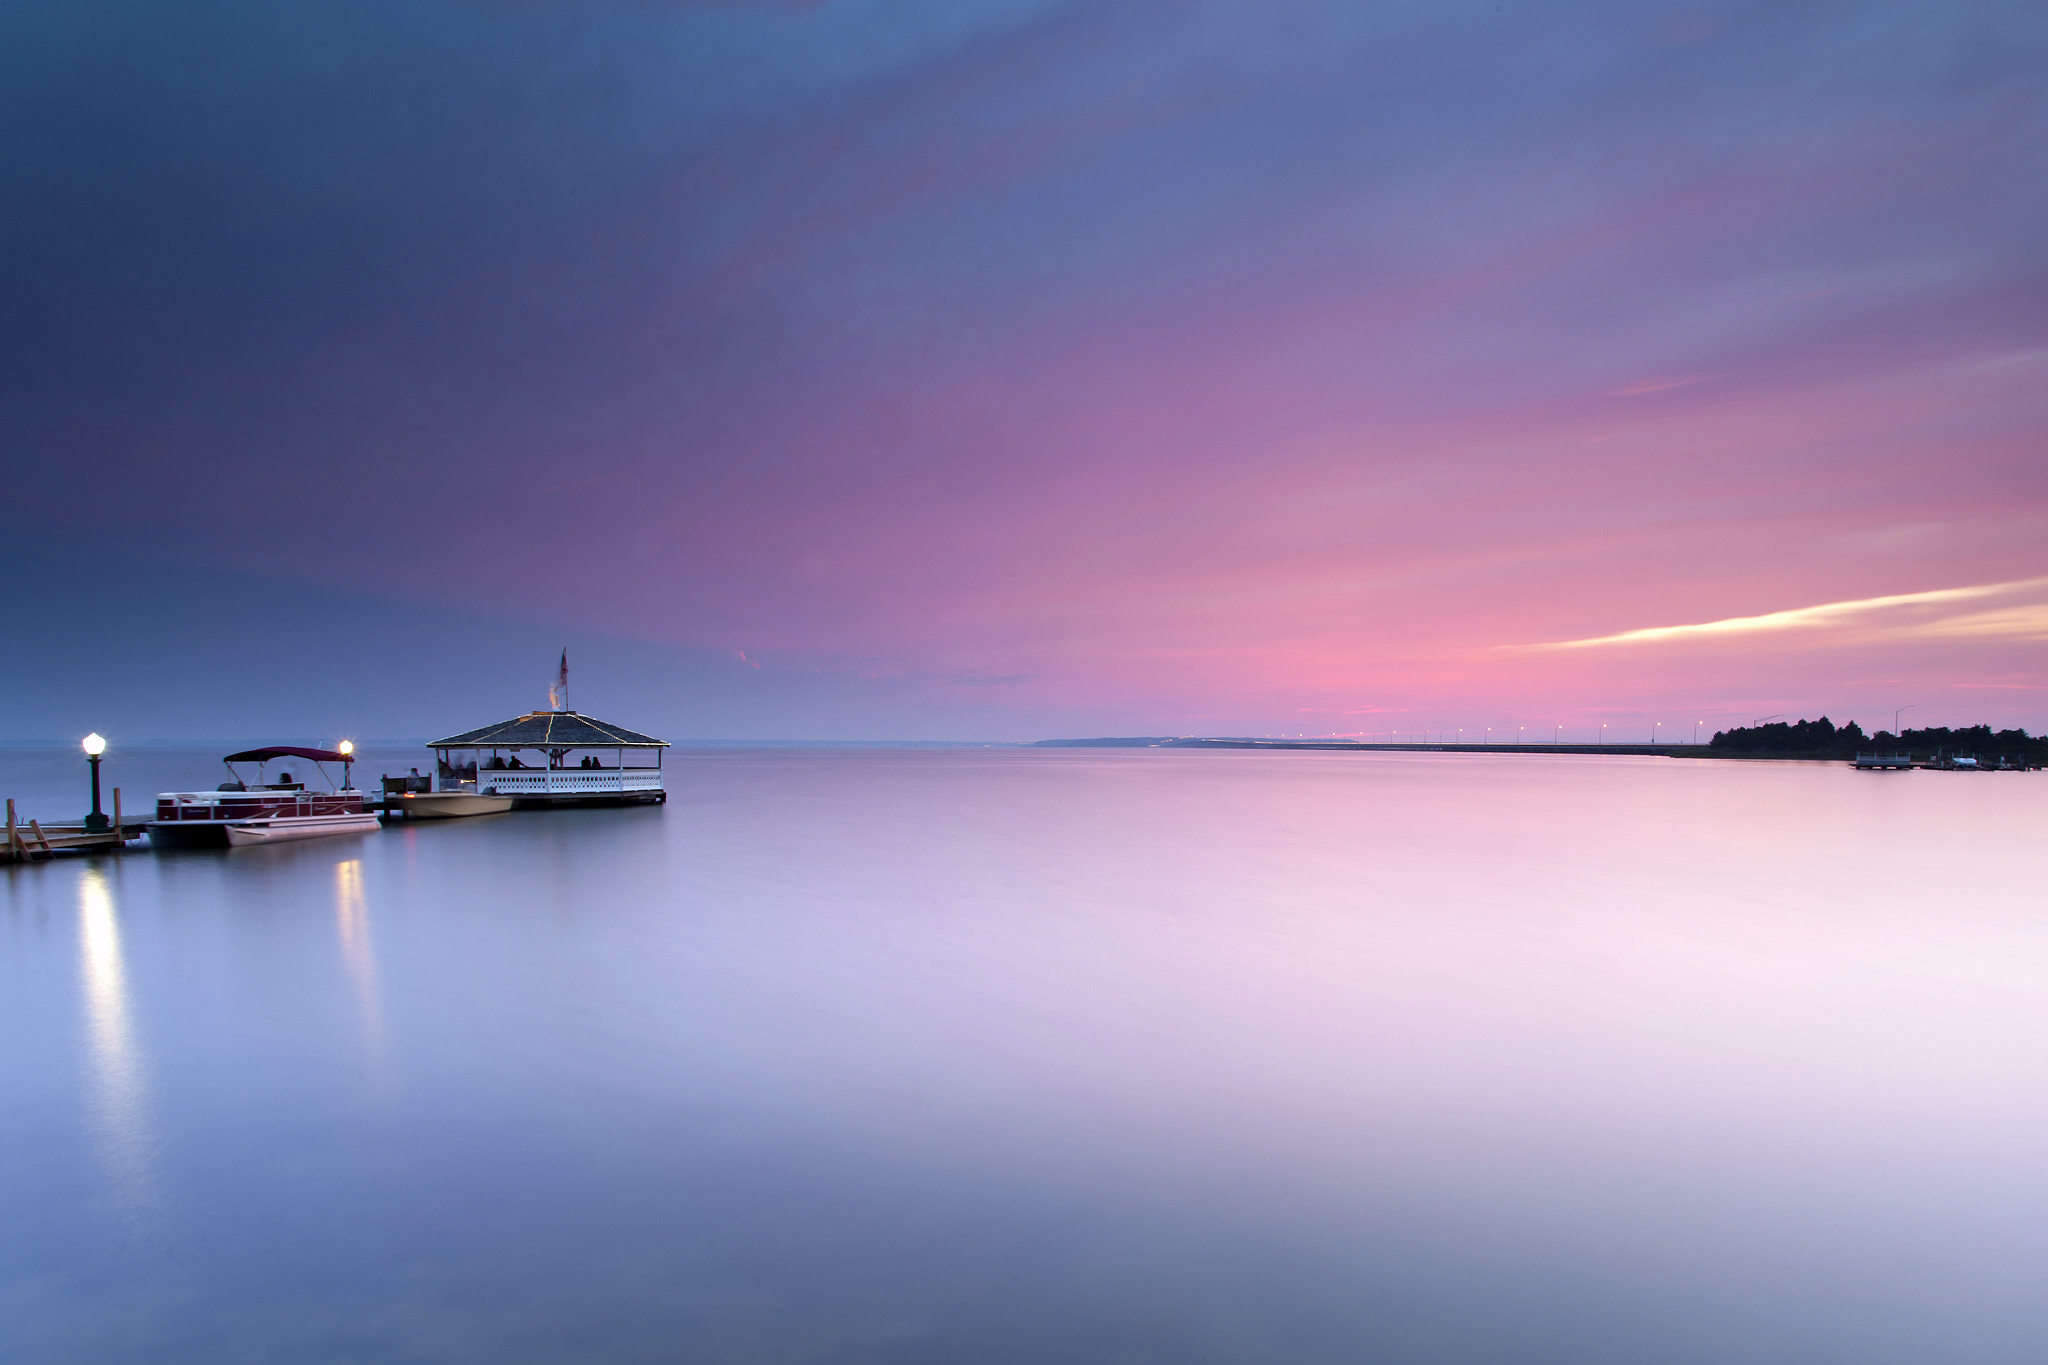  calm dock lights boat evening sunset wallpaper   ForWallpapercom 2048x1365